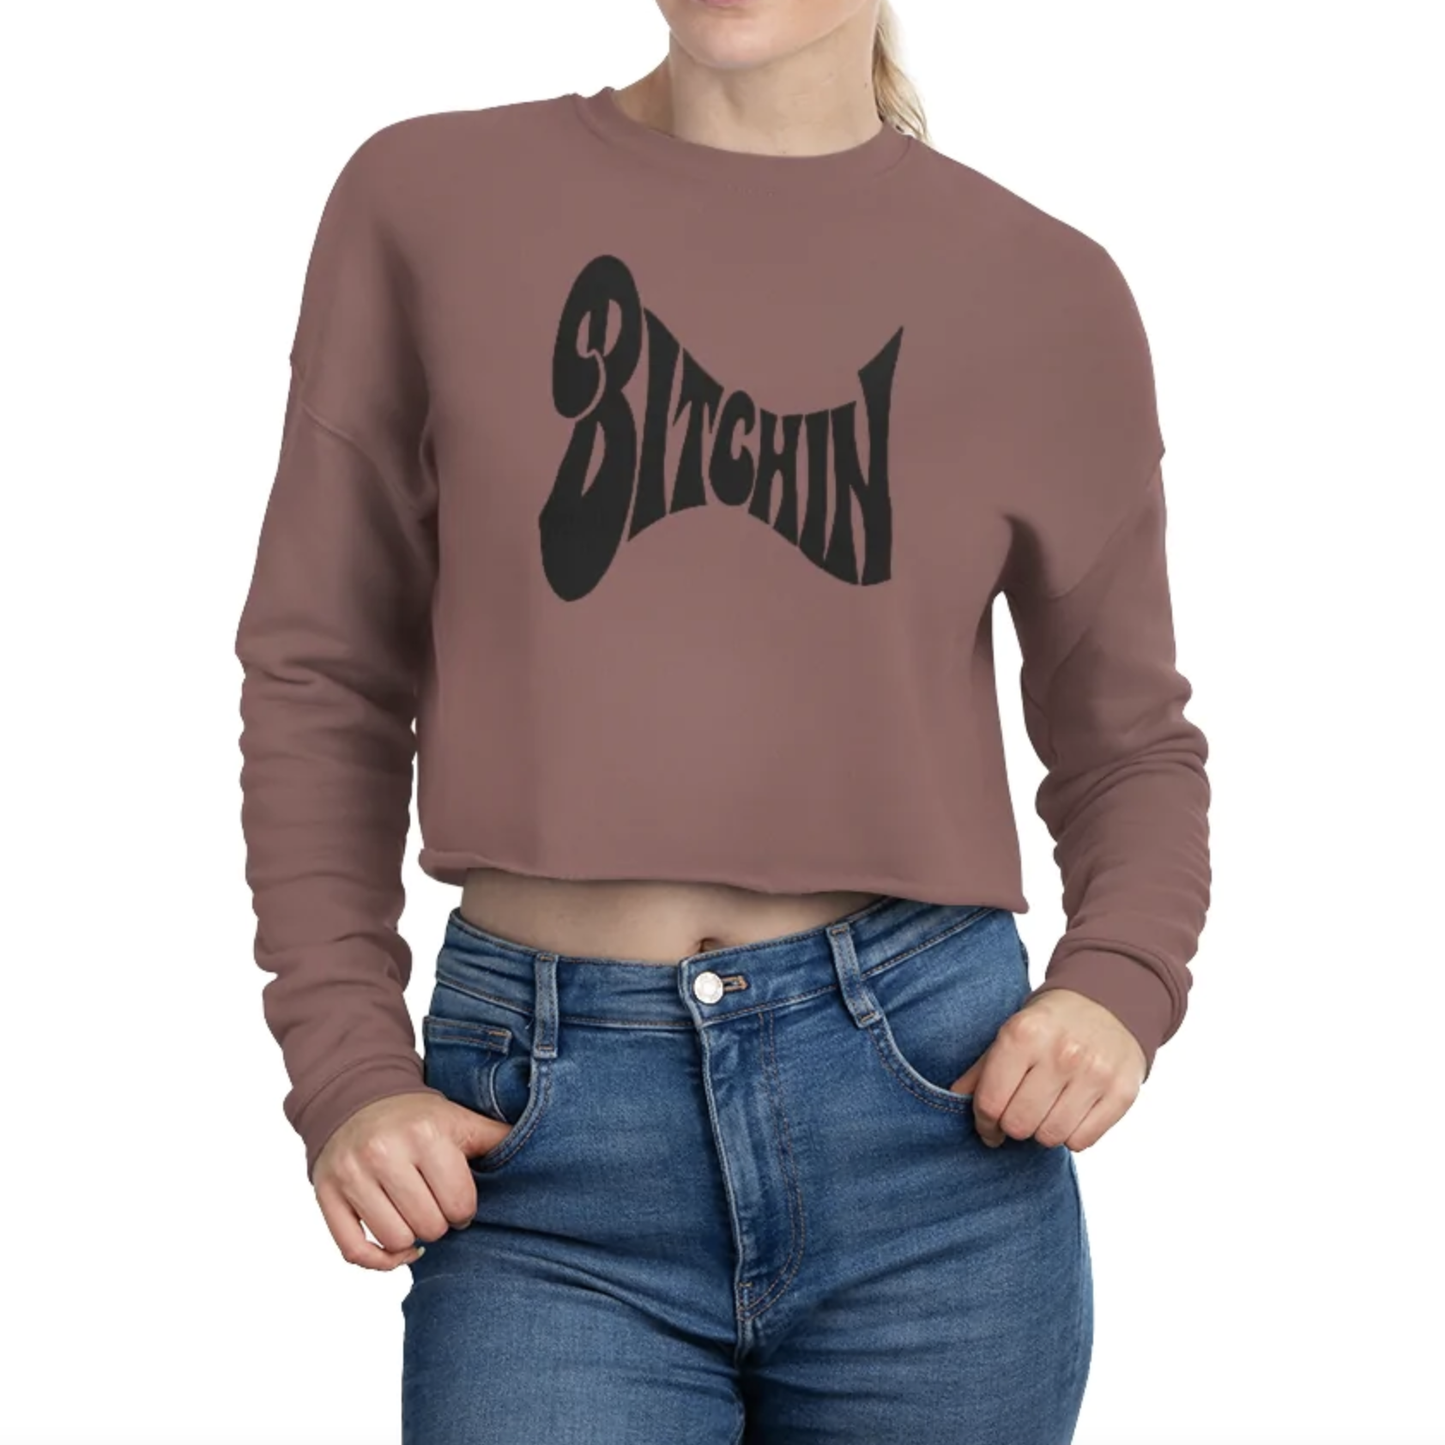 Bitchin' - Women's Cropped Sweatshirt